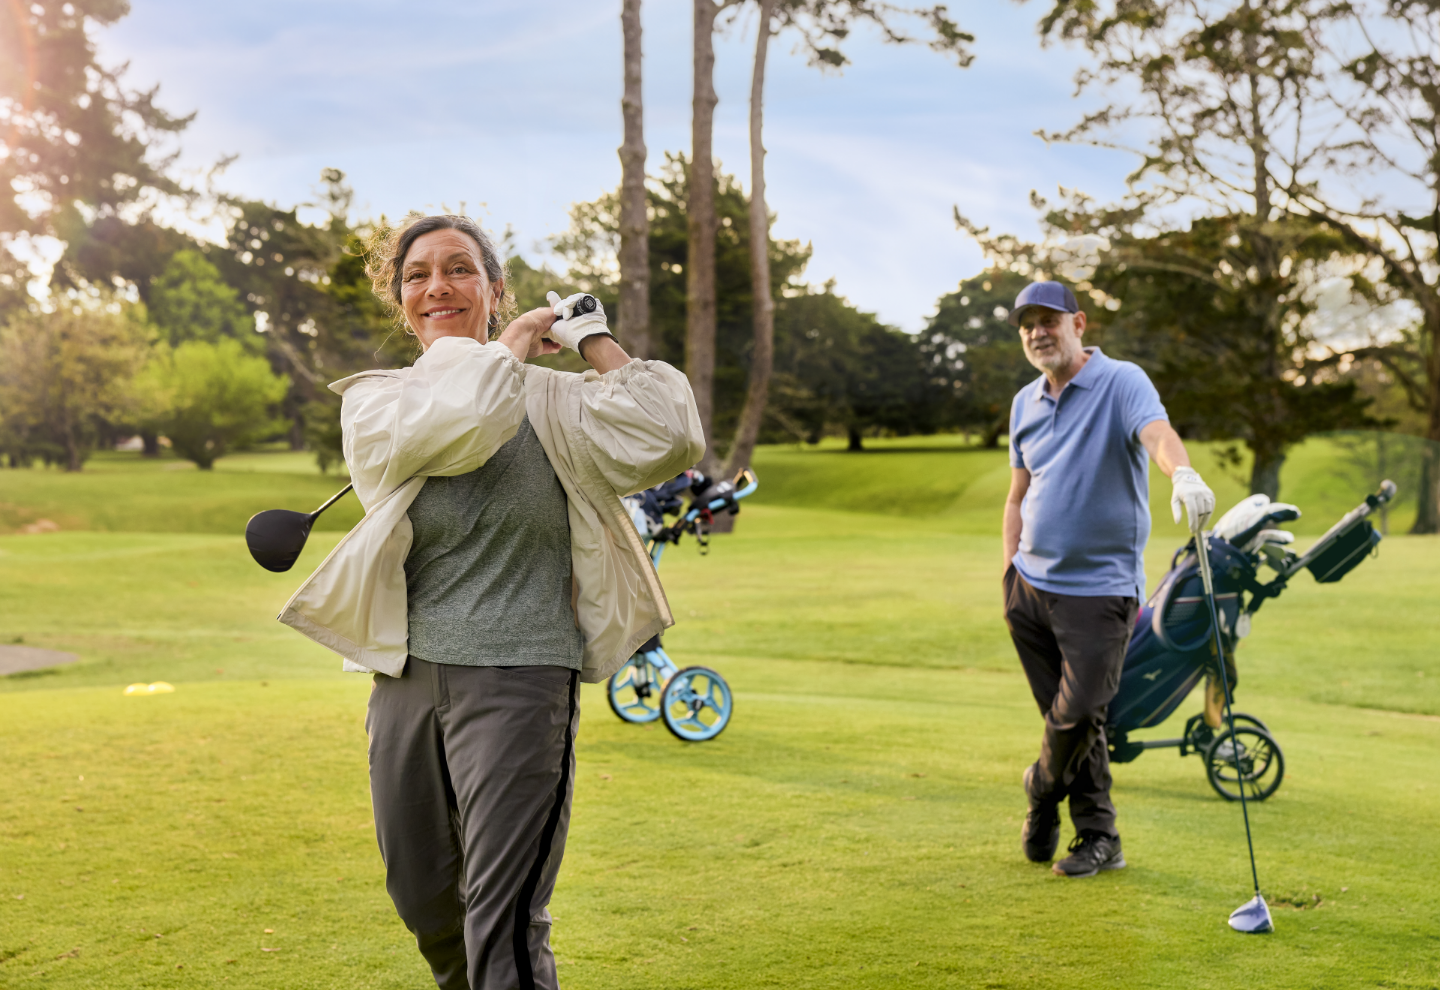 Golfers enjoy a round on the course next to Fairway Gardens village 